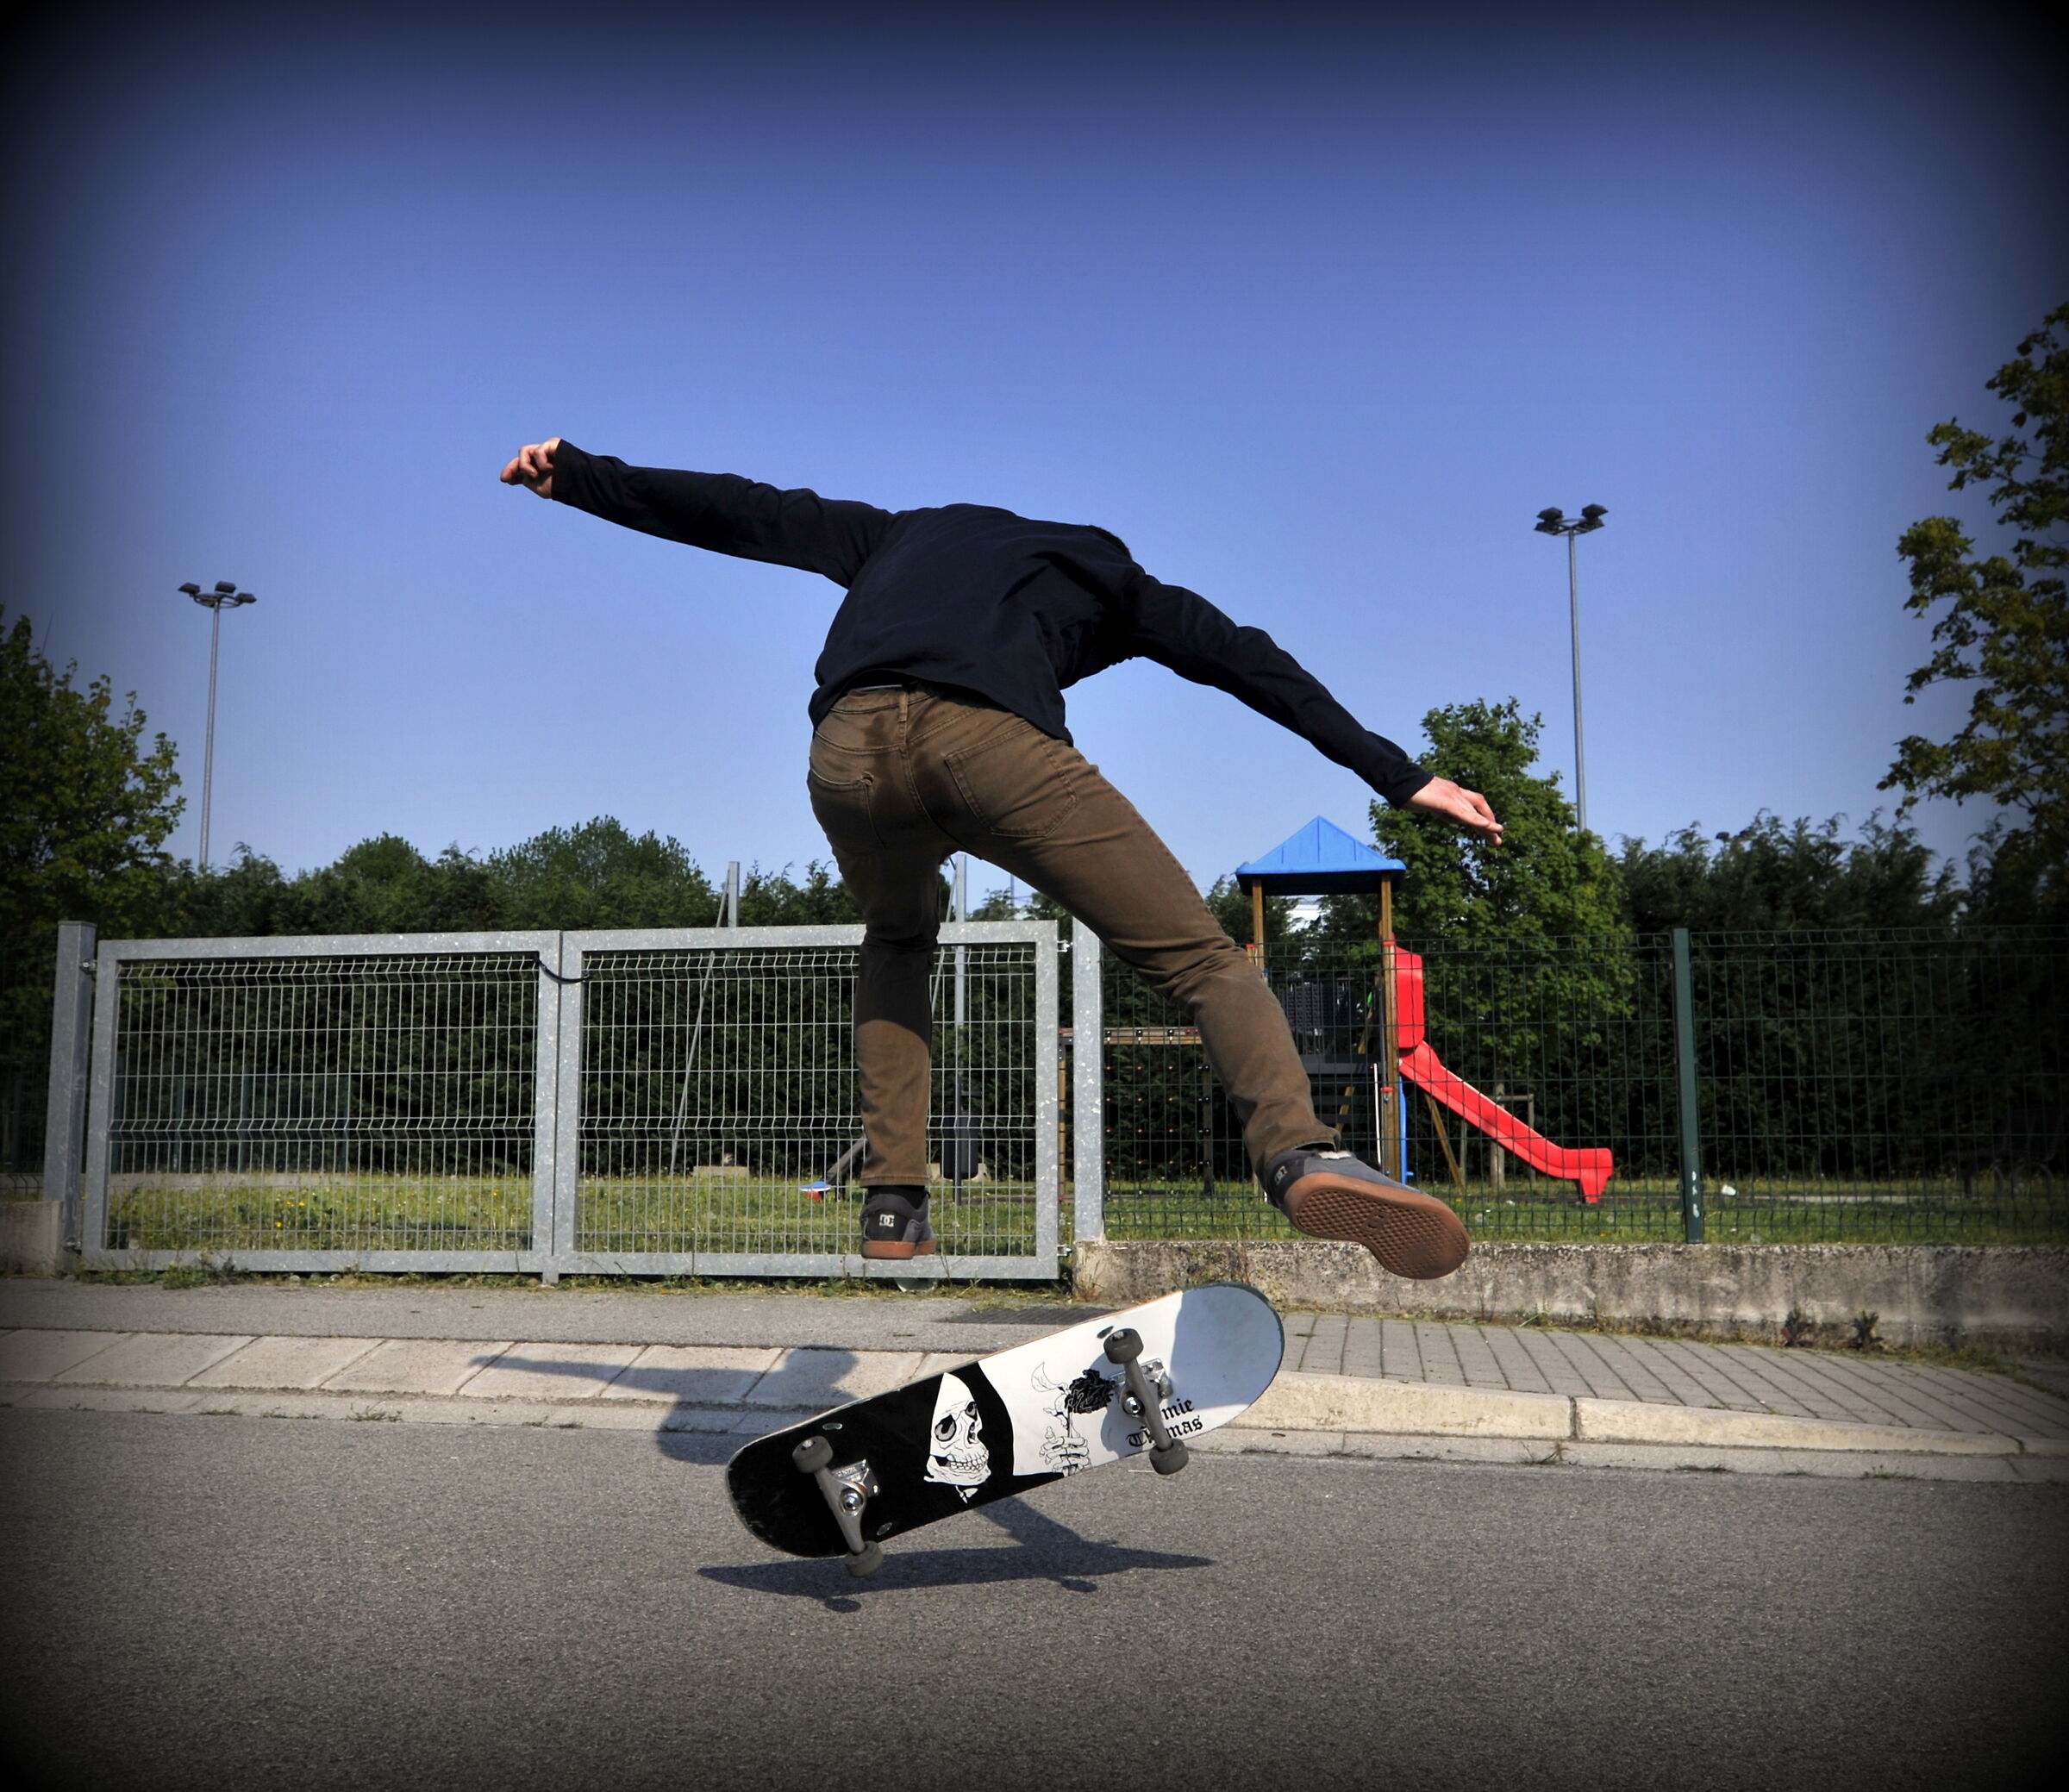 Acrobatic skateboard...